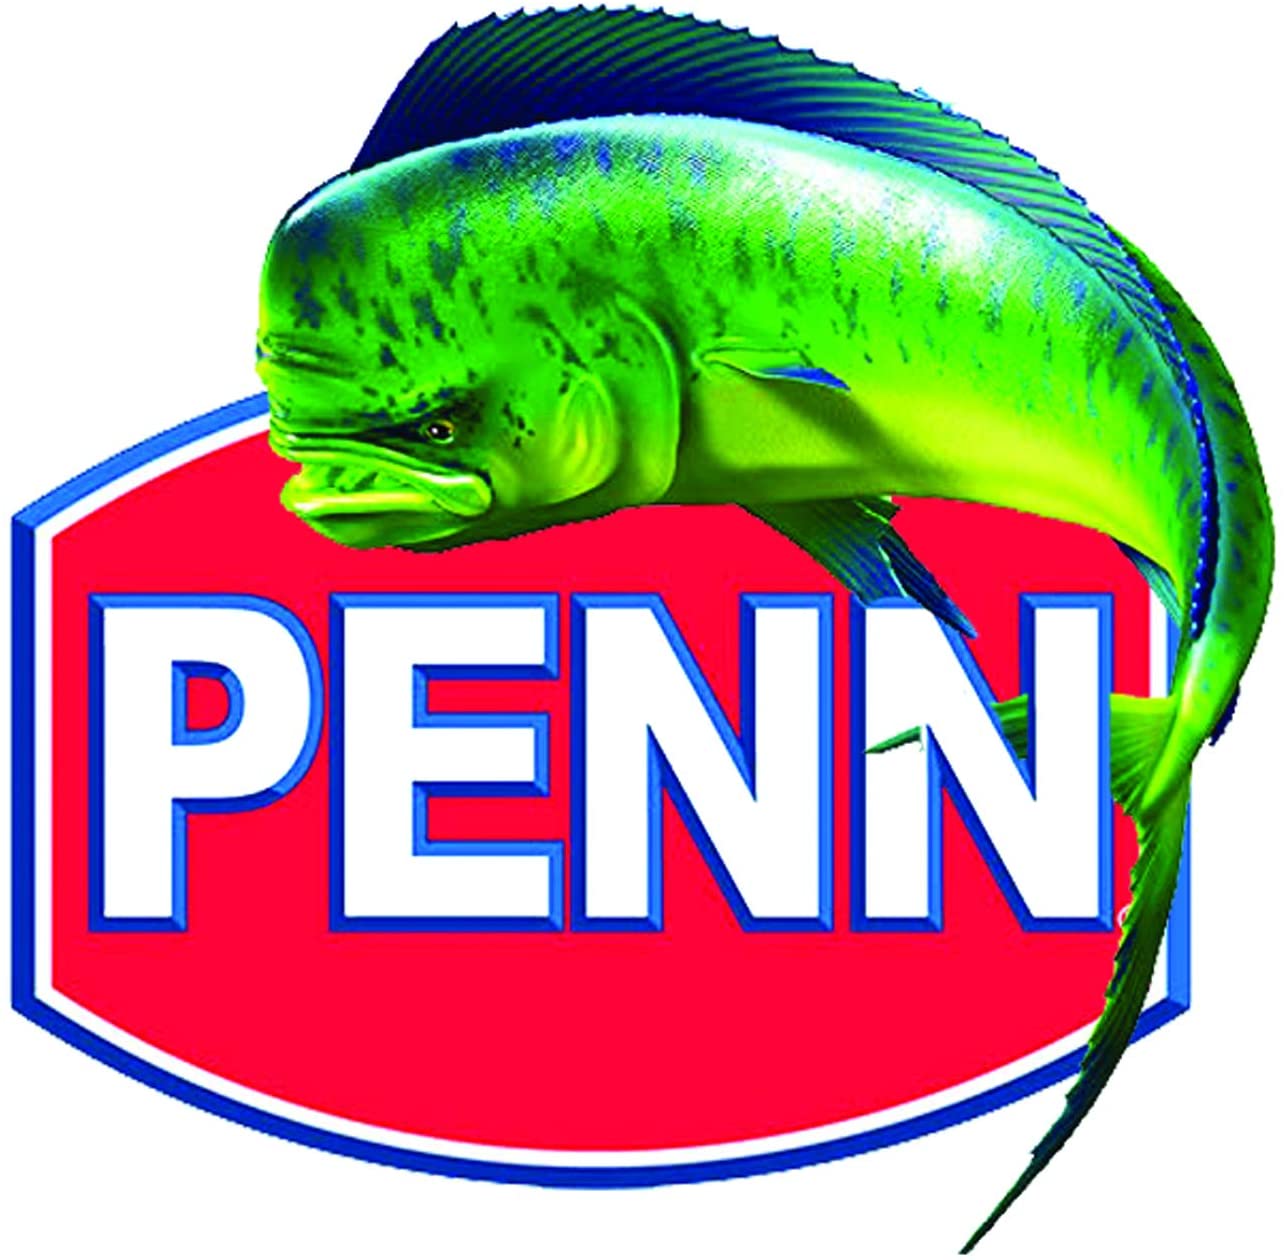 PENN LOGO FISHING STICKER 4 - Pro Sport Stickers